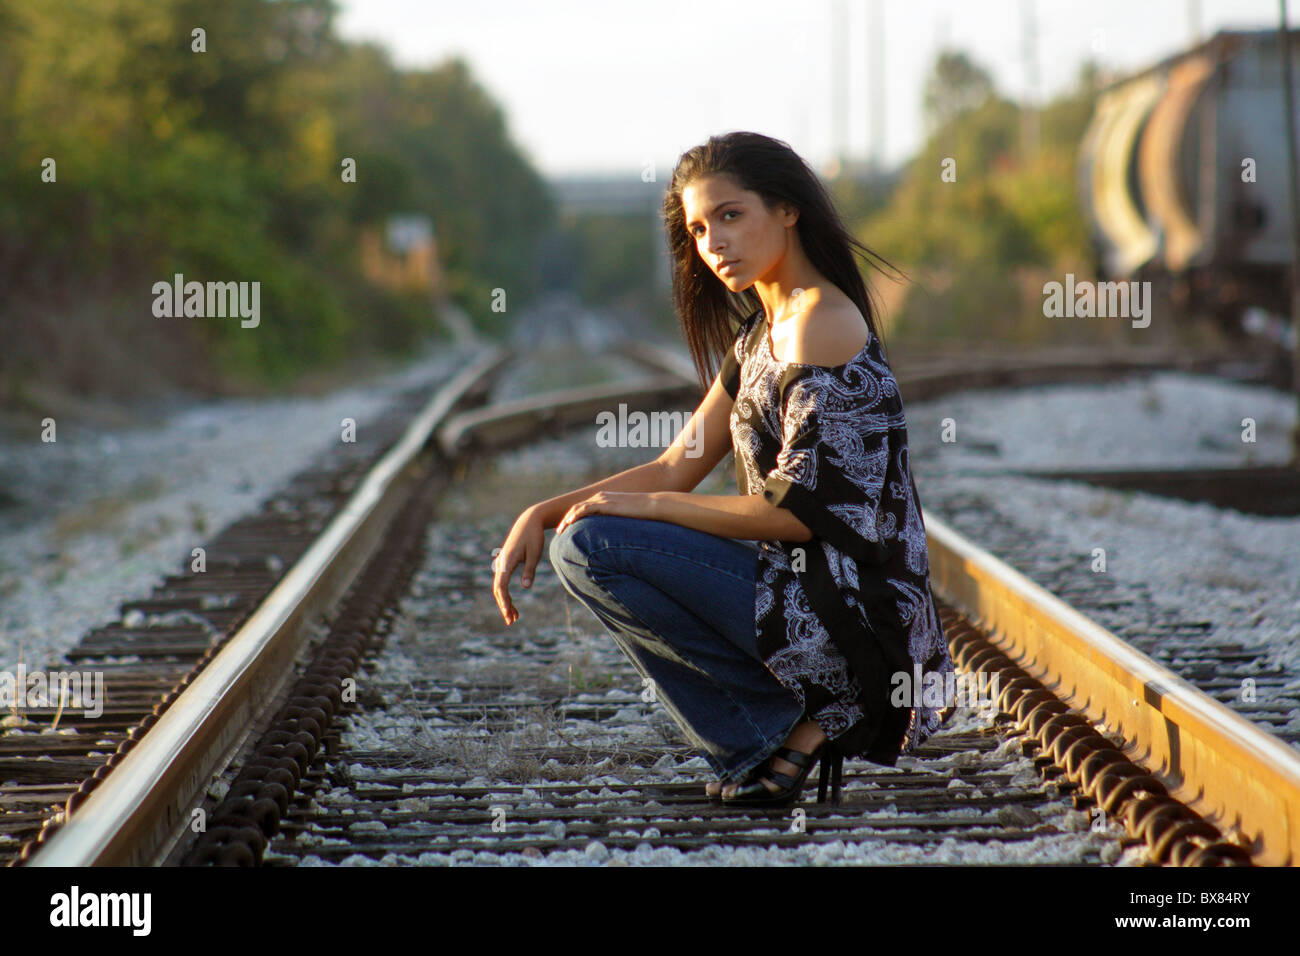 Une belle latina adolescents s'accroupit sur une voie ferrée, regardant la caméra. Banque D'Images